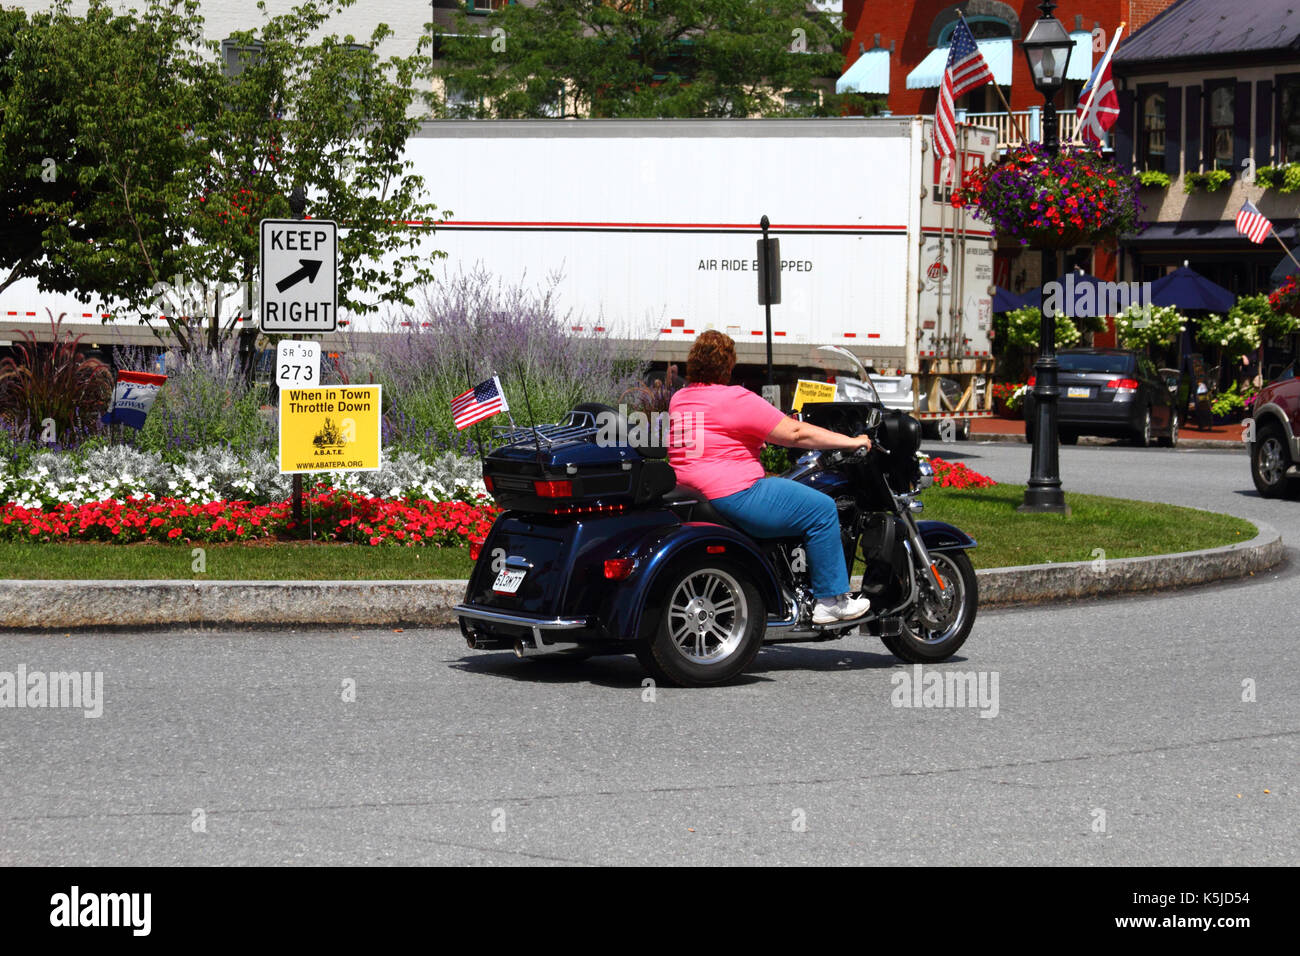 Bikerin auf einem Motortrike, die während der Bike Week in Gettysburg, Adams County, Pennsylvania, USA, am Schild „Town Throttle Down“ am Lincoln Square vorbeifährt Stockfoto